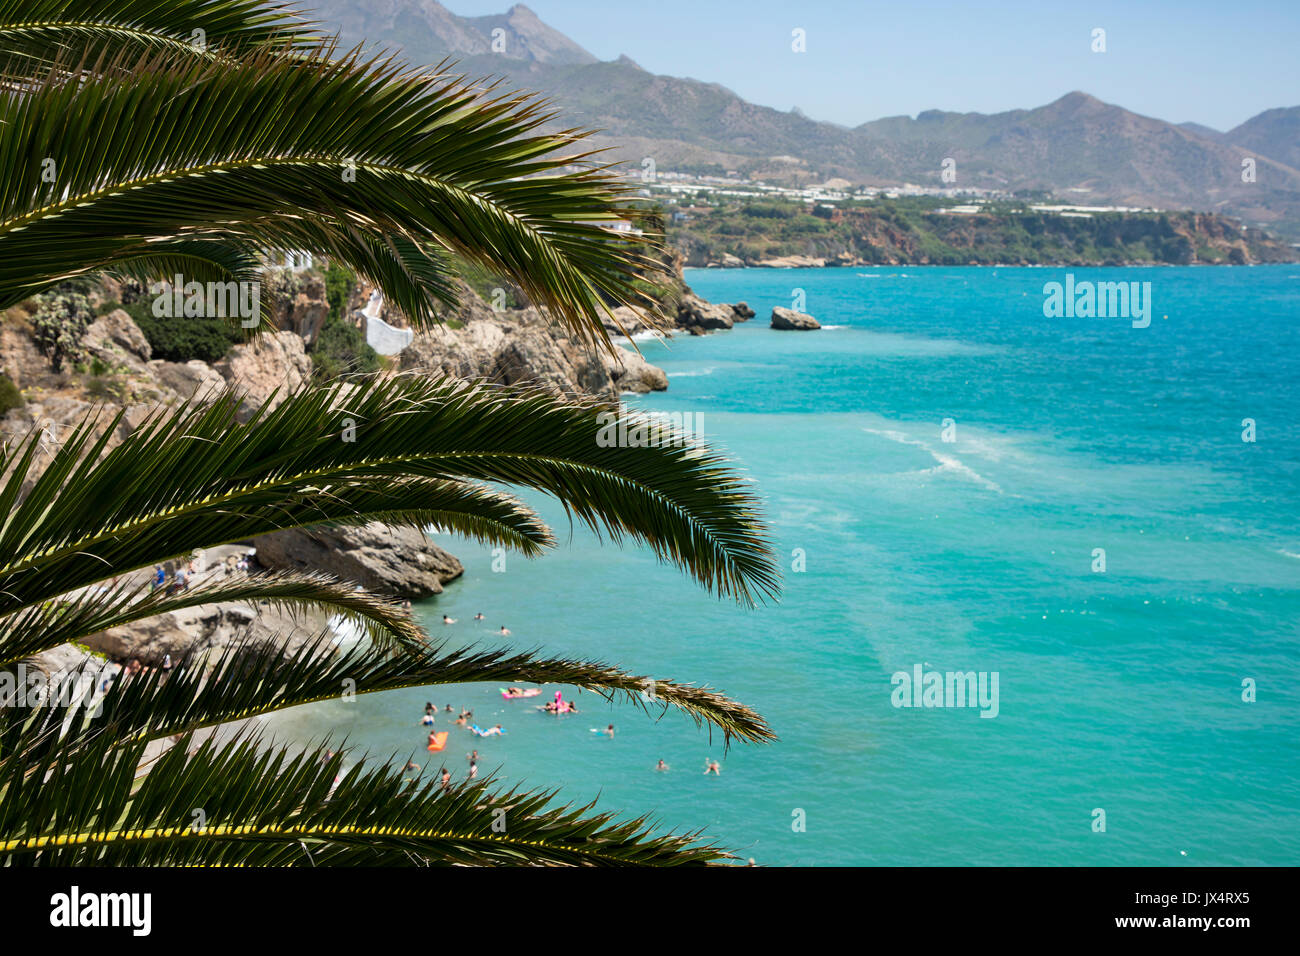 La côte d'été d'espagnol avec des gens sur la plage, dans le bleu de l'eau et la montagne en arrière-plan et un palmier dans l'avant-plan Banque D'Images